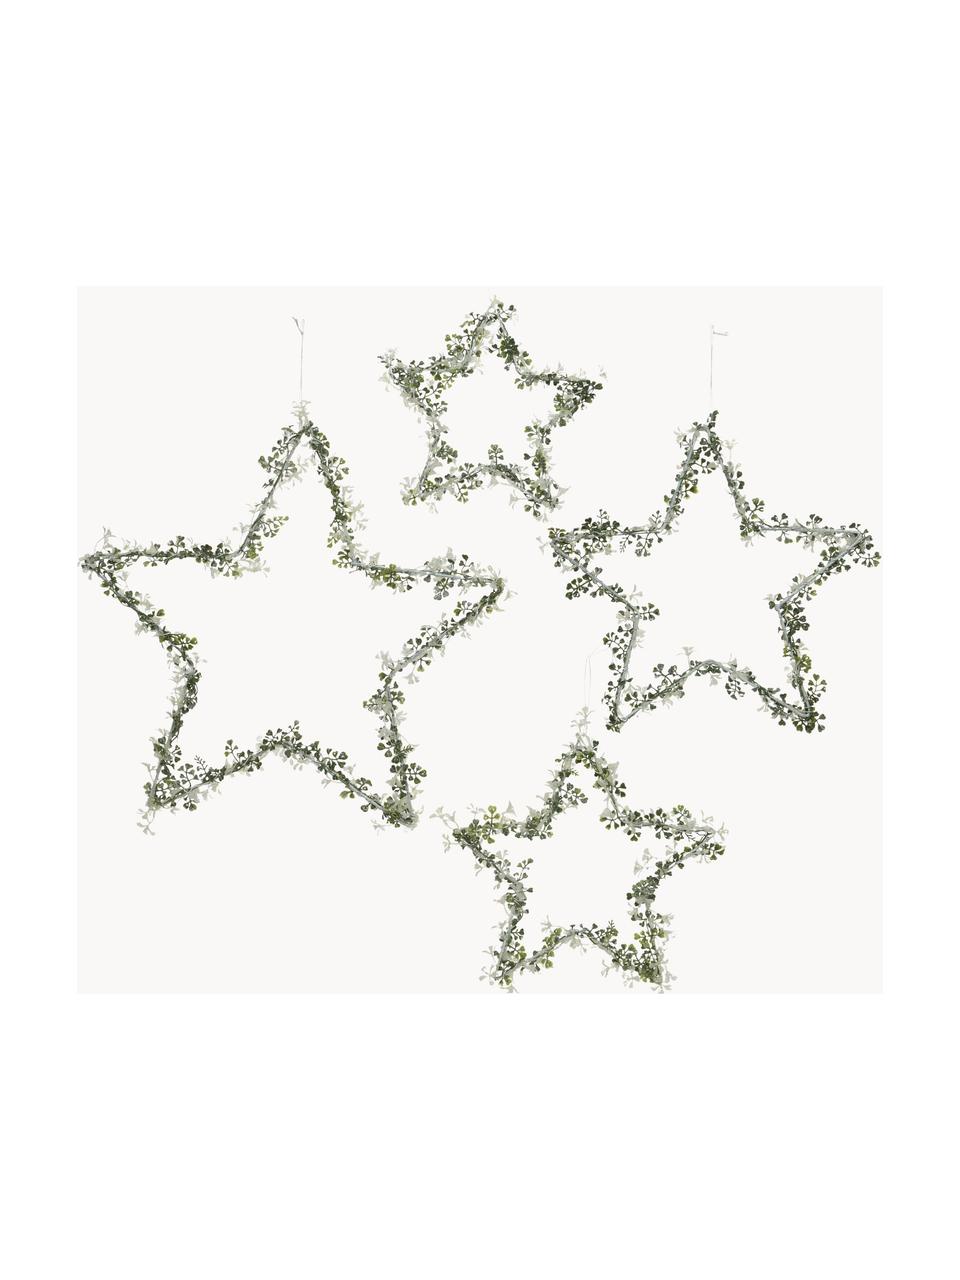 Komplet gwiazd dekoracyjnych Stars, 4 elem., Metal, Zielony, biały, Komplet z różnymi rozmiarami